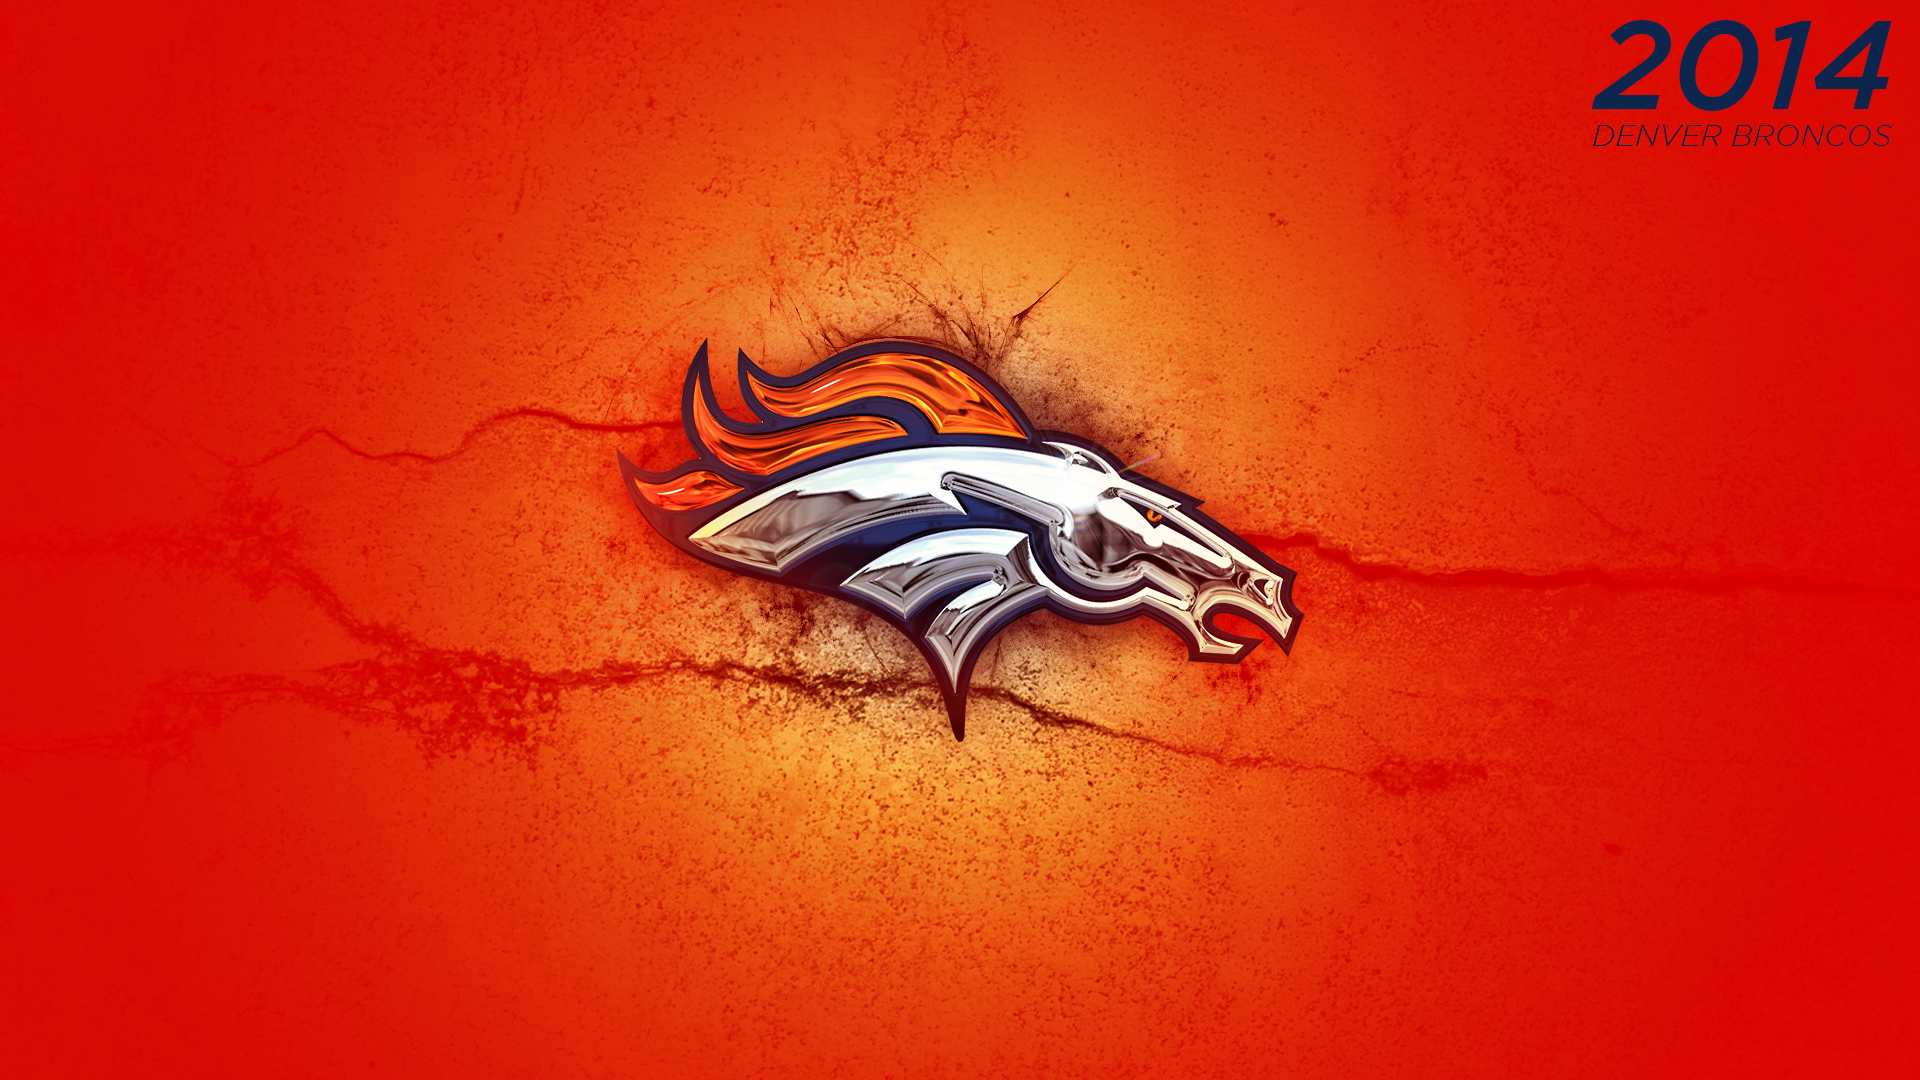 Denver Broncos Wallpaper 2014 2014 denver broncos logo